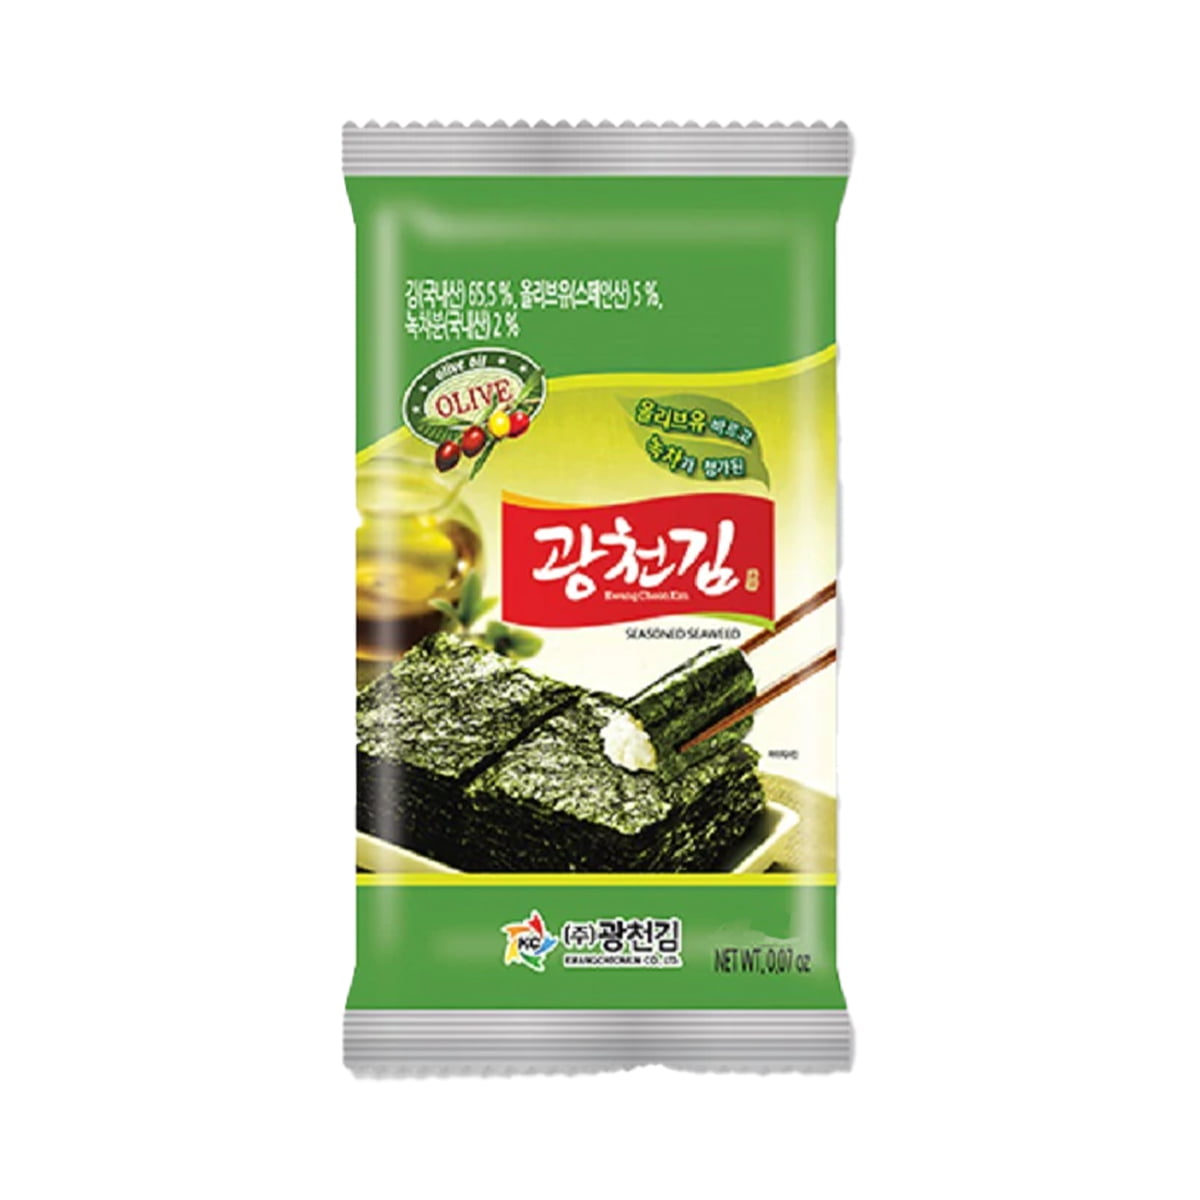 Alga Marinha Temperada com Azeite e Chá Verde Ajinori - 5 gramas